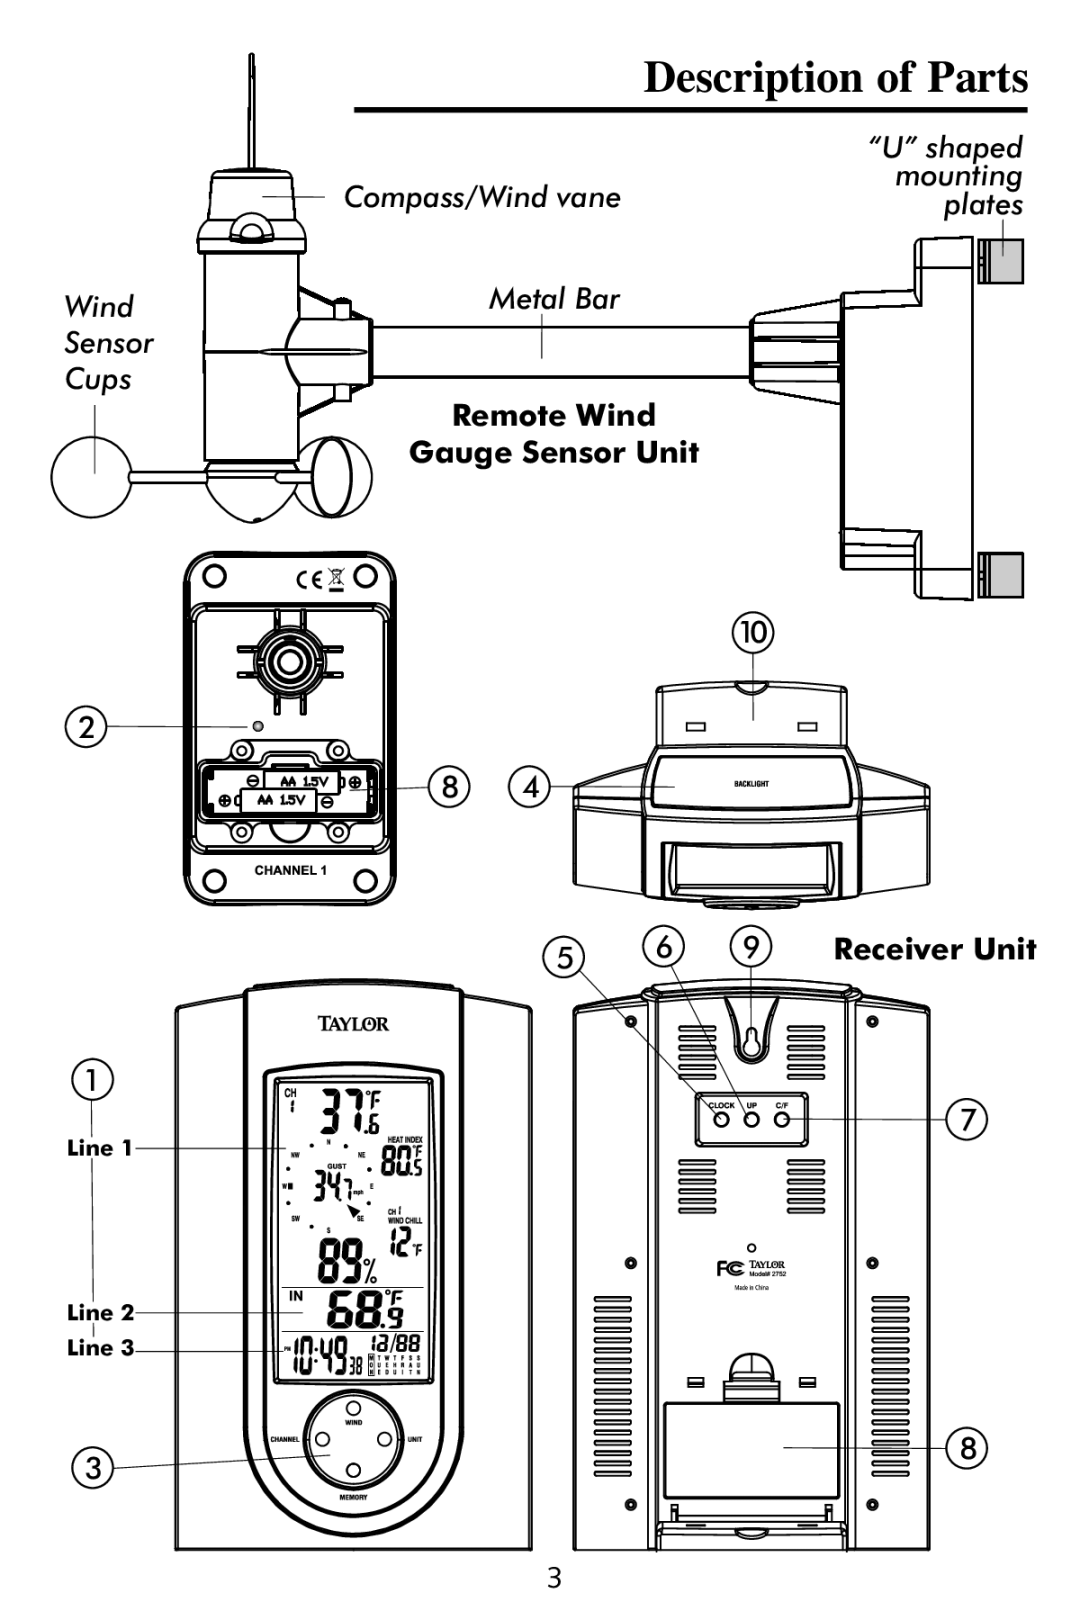 Taylor 2752 instruction manual Remote Wind Gauge Sensor Unit, Receiver Unit, Description of Parts 